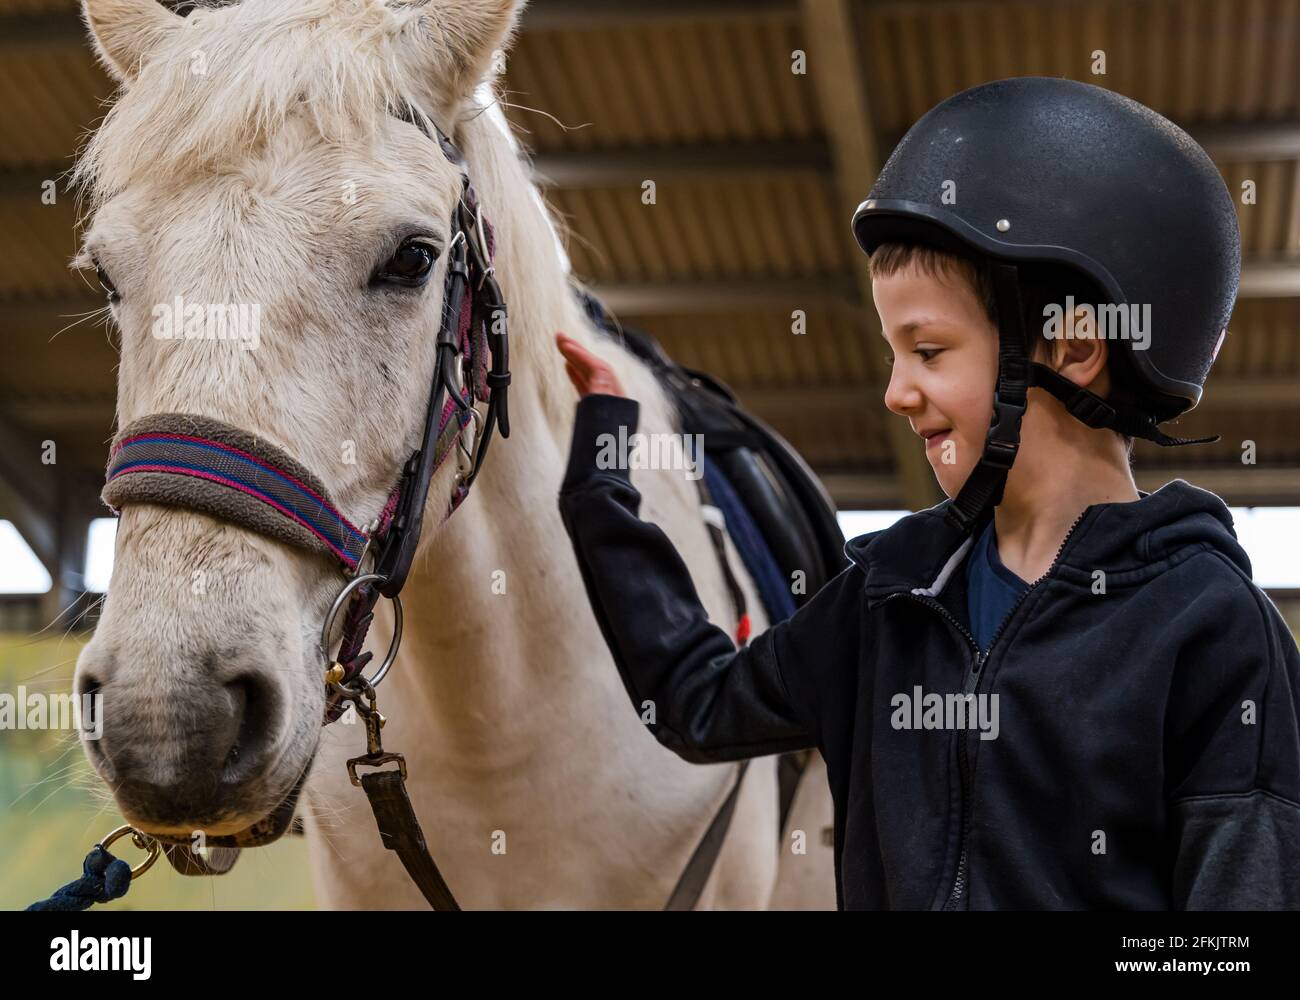 Junge mit Reithut und Pferd beim Reiten für Behinderte, Muirfield Riding Therapy, East Lothian, Schottland, Großbritannien Stockfoto